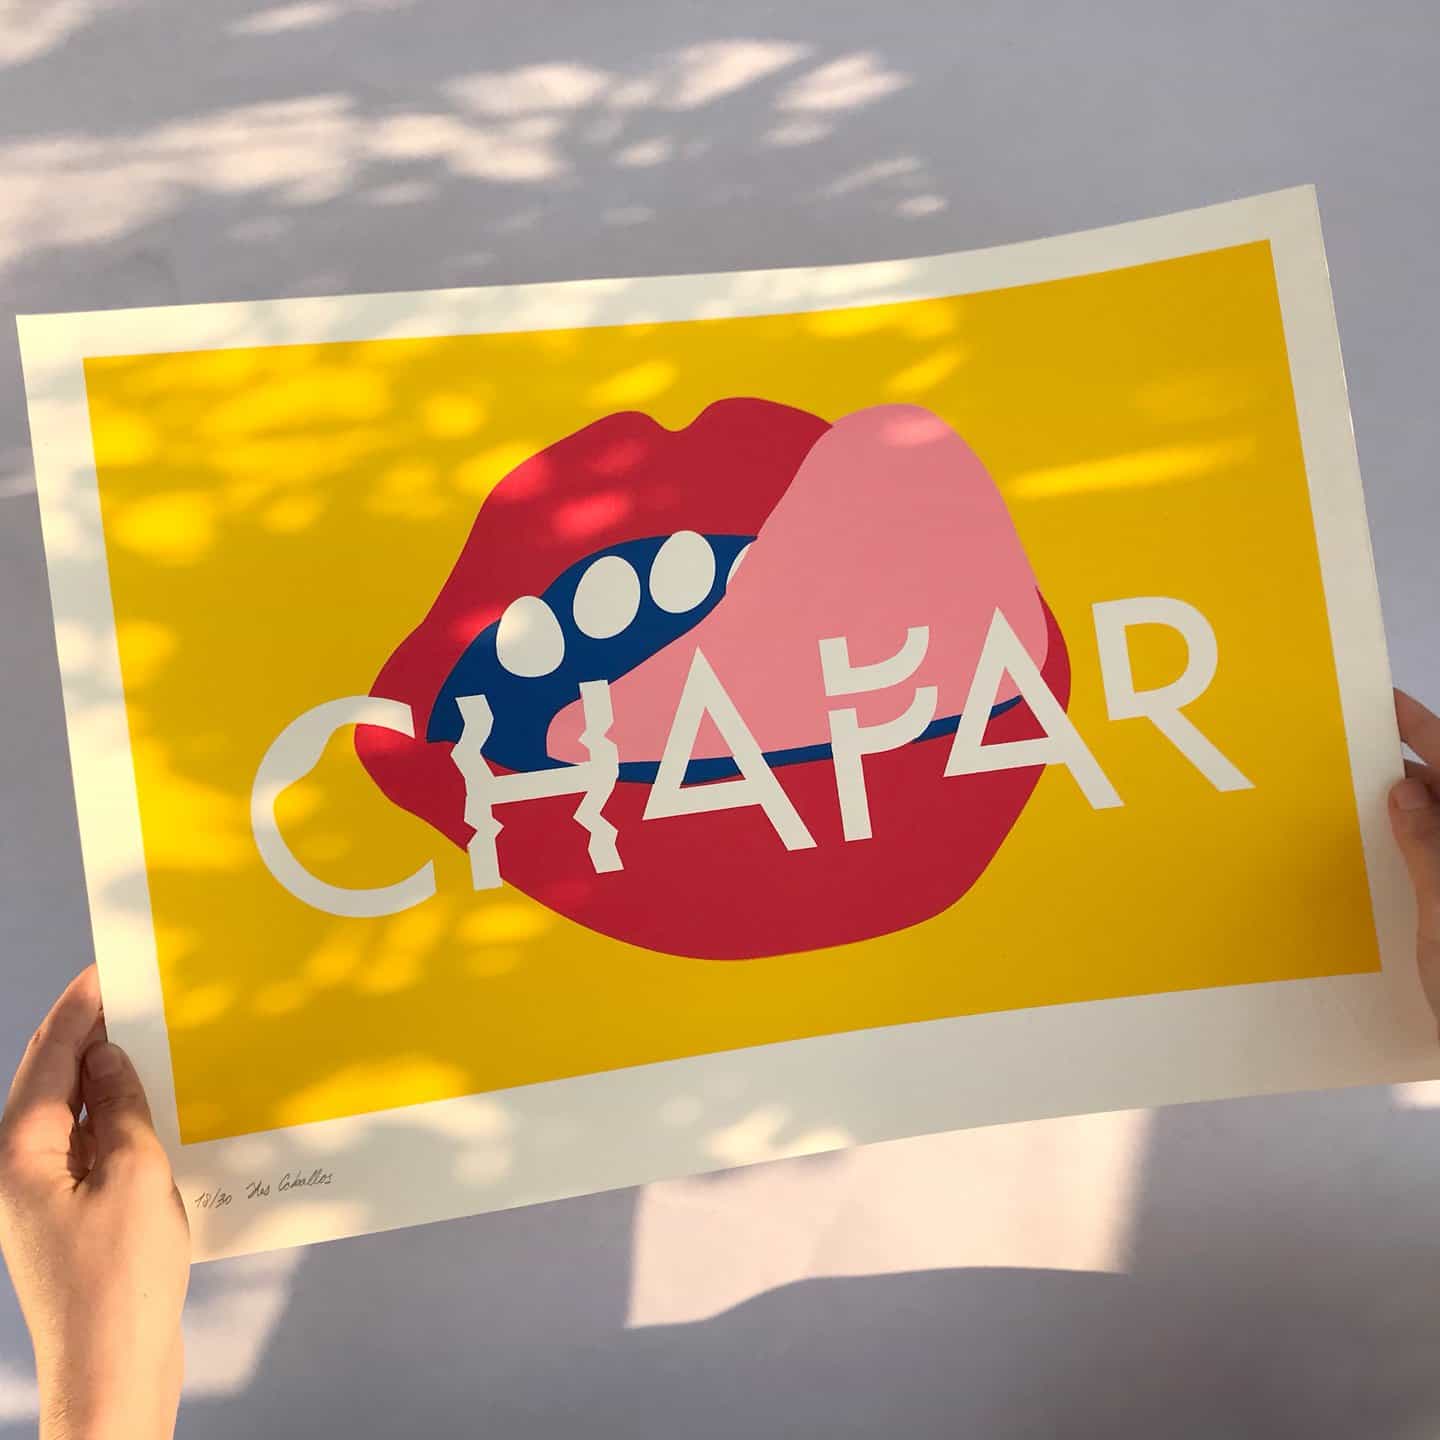 Los Caballos: Chapar (Copyright © Los Caballos, 2021)